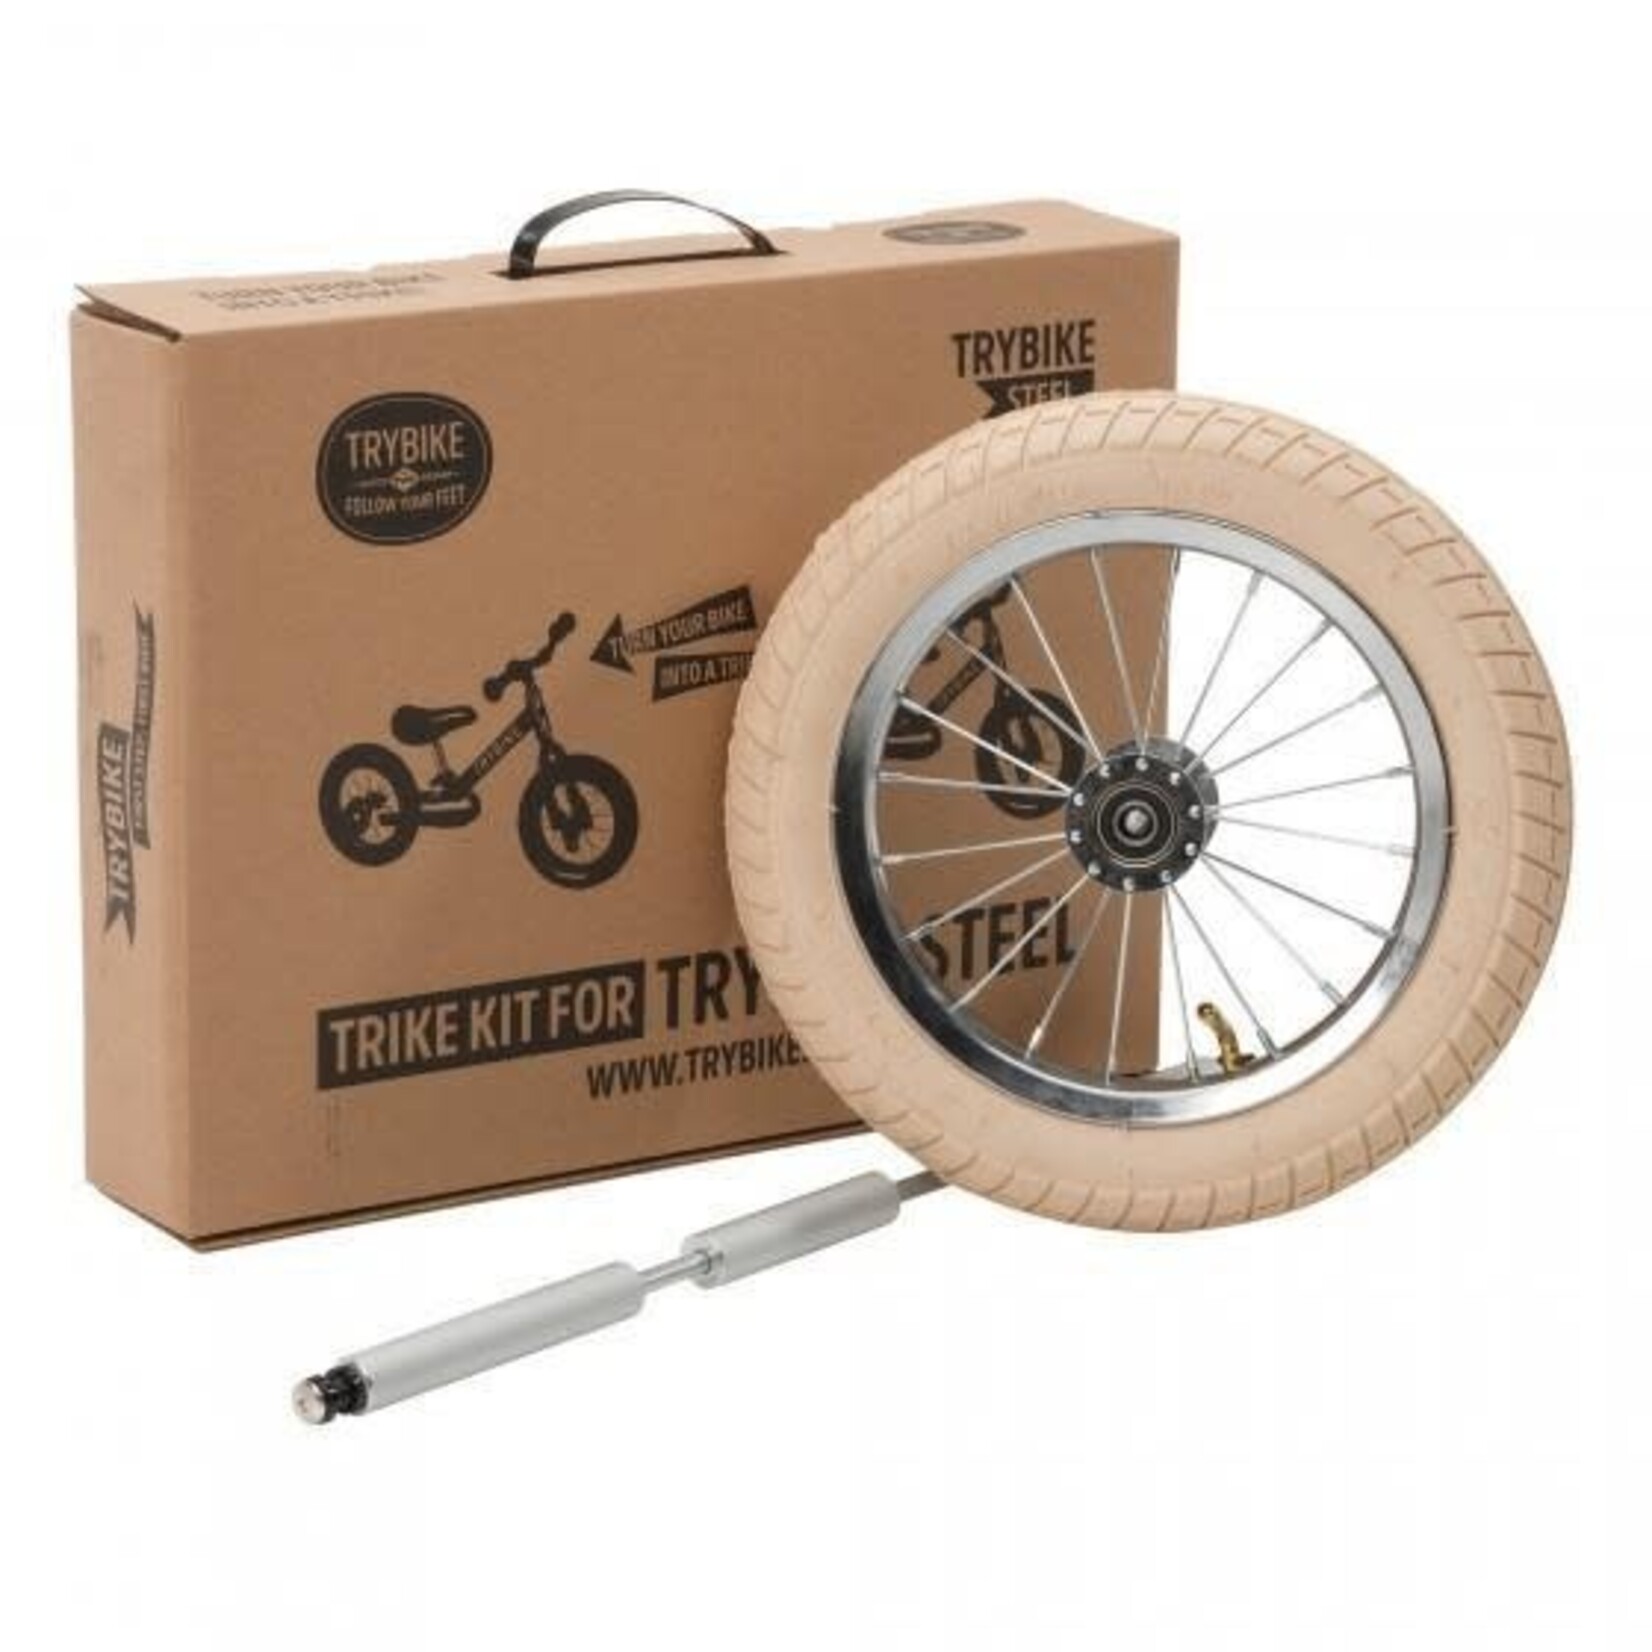 Trybike Trybike - Trybike Steel, Vintage Trike Kit